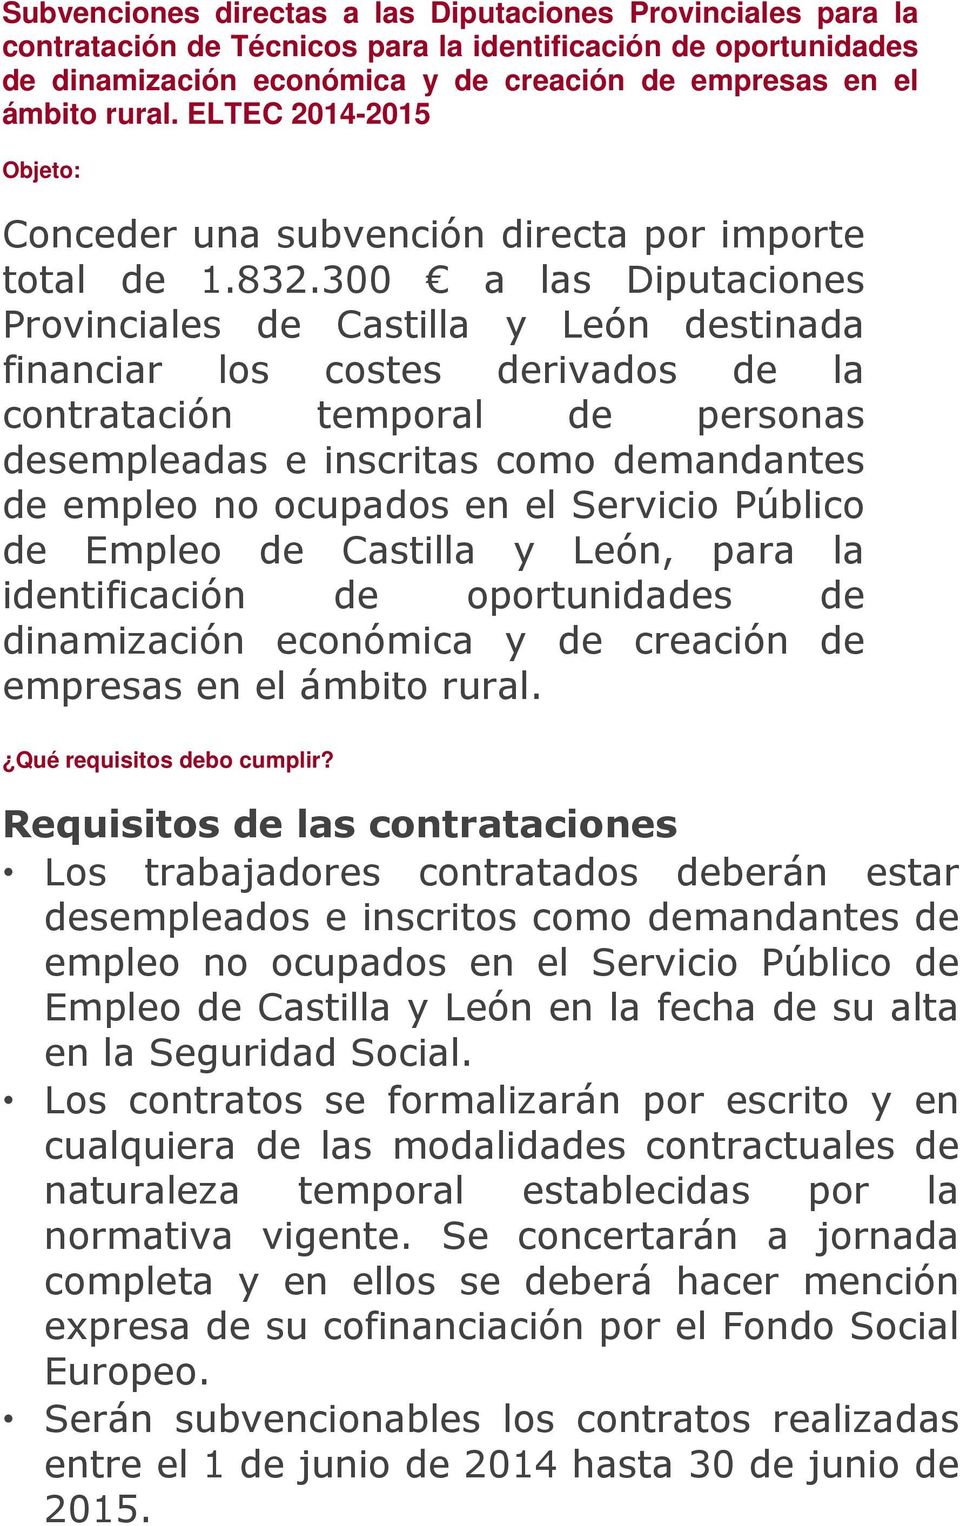 300 a las Diputaciones Provinciales de Castilla y León destinada financiar los costes derivados de la contratación temporal de personas desempleadas e inscritas como demandantes de empleo no ocupados